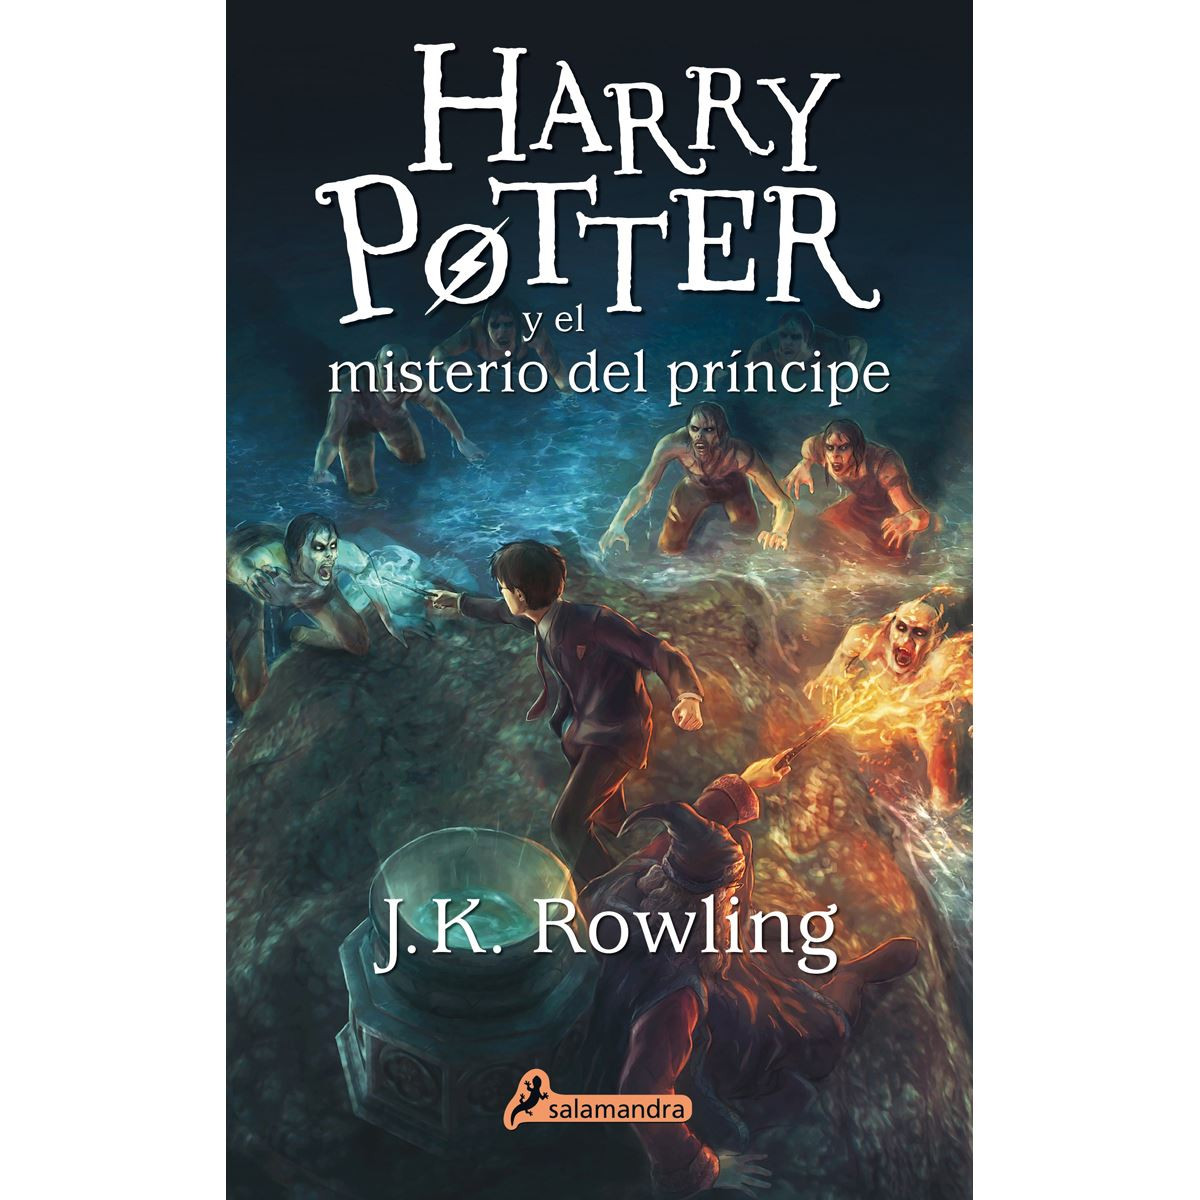 Imagen Harry Potter y el misterio del príncipe. J.K. Rowling